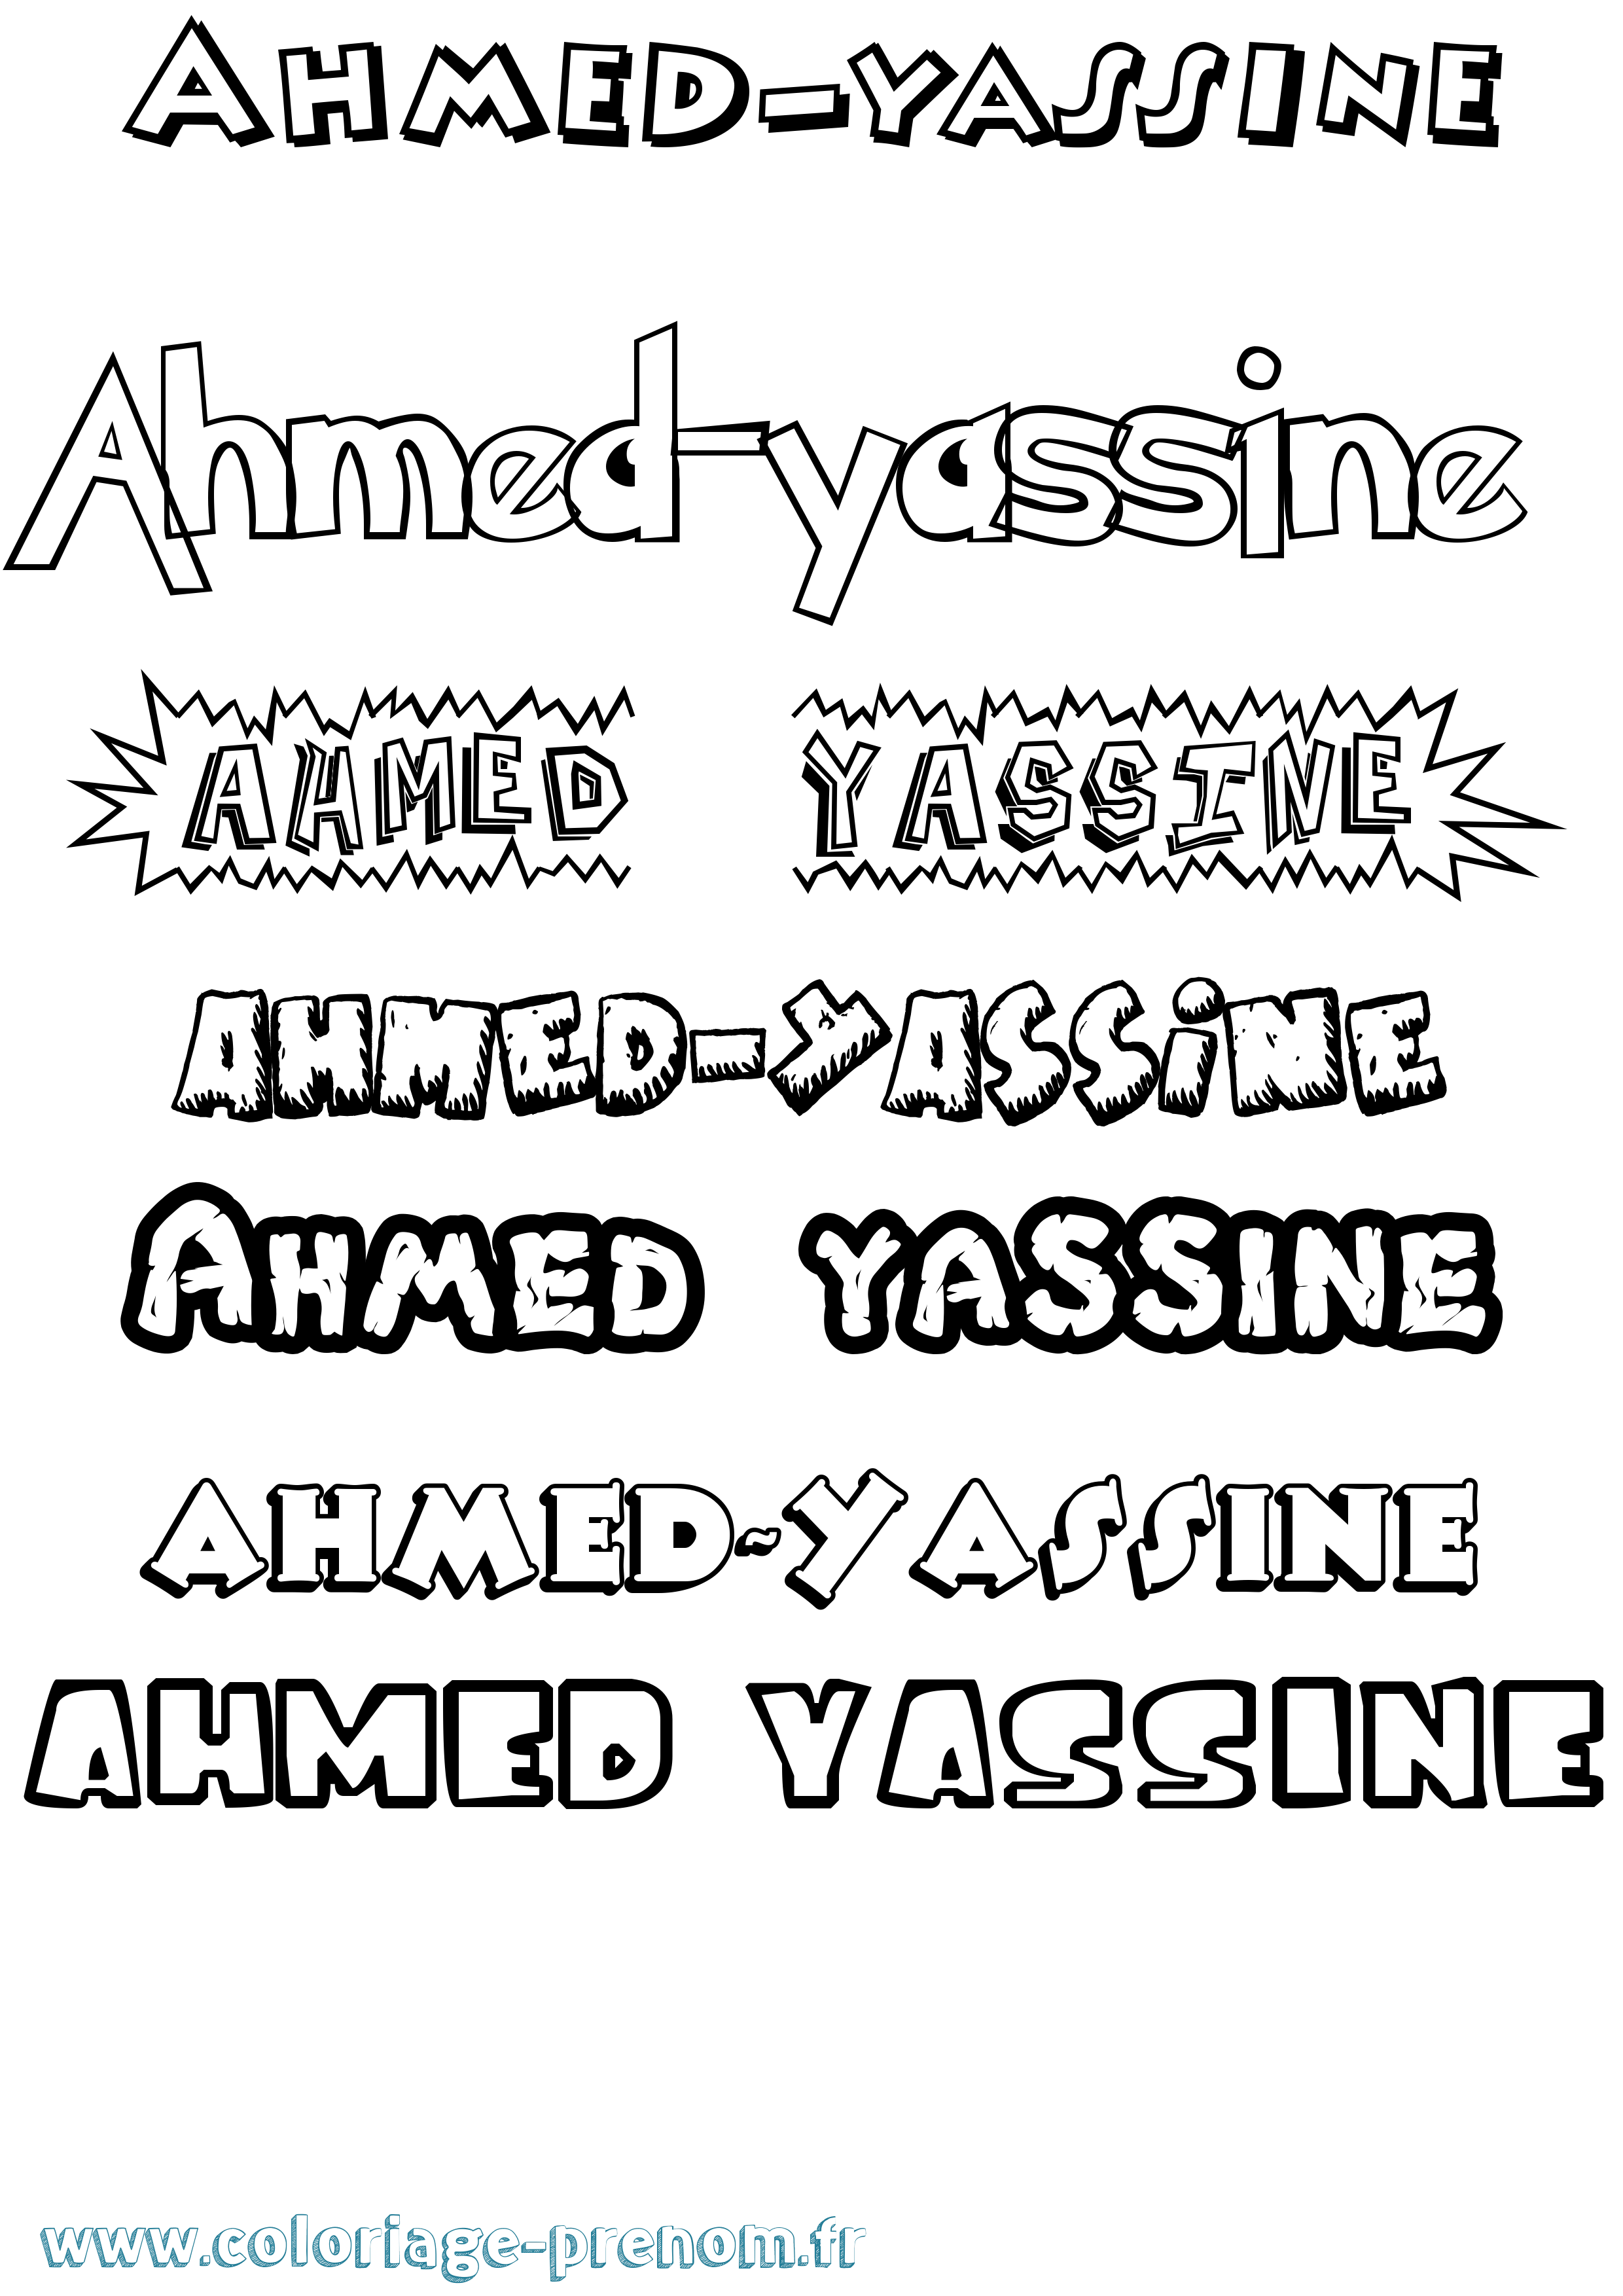 Coloriage prénom Ahmed-Yassine Dessin Animé